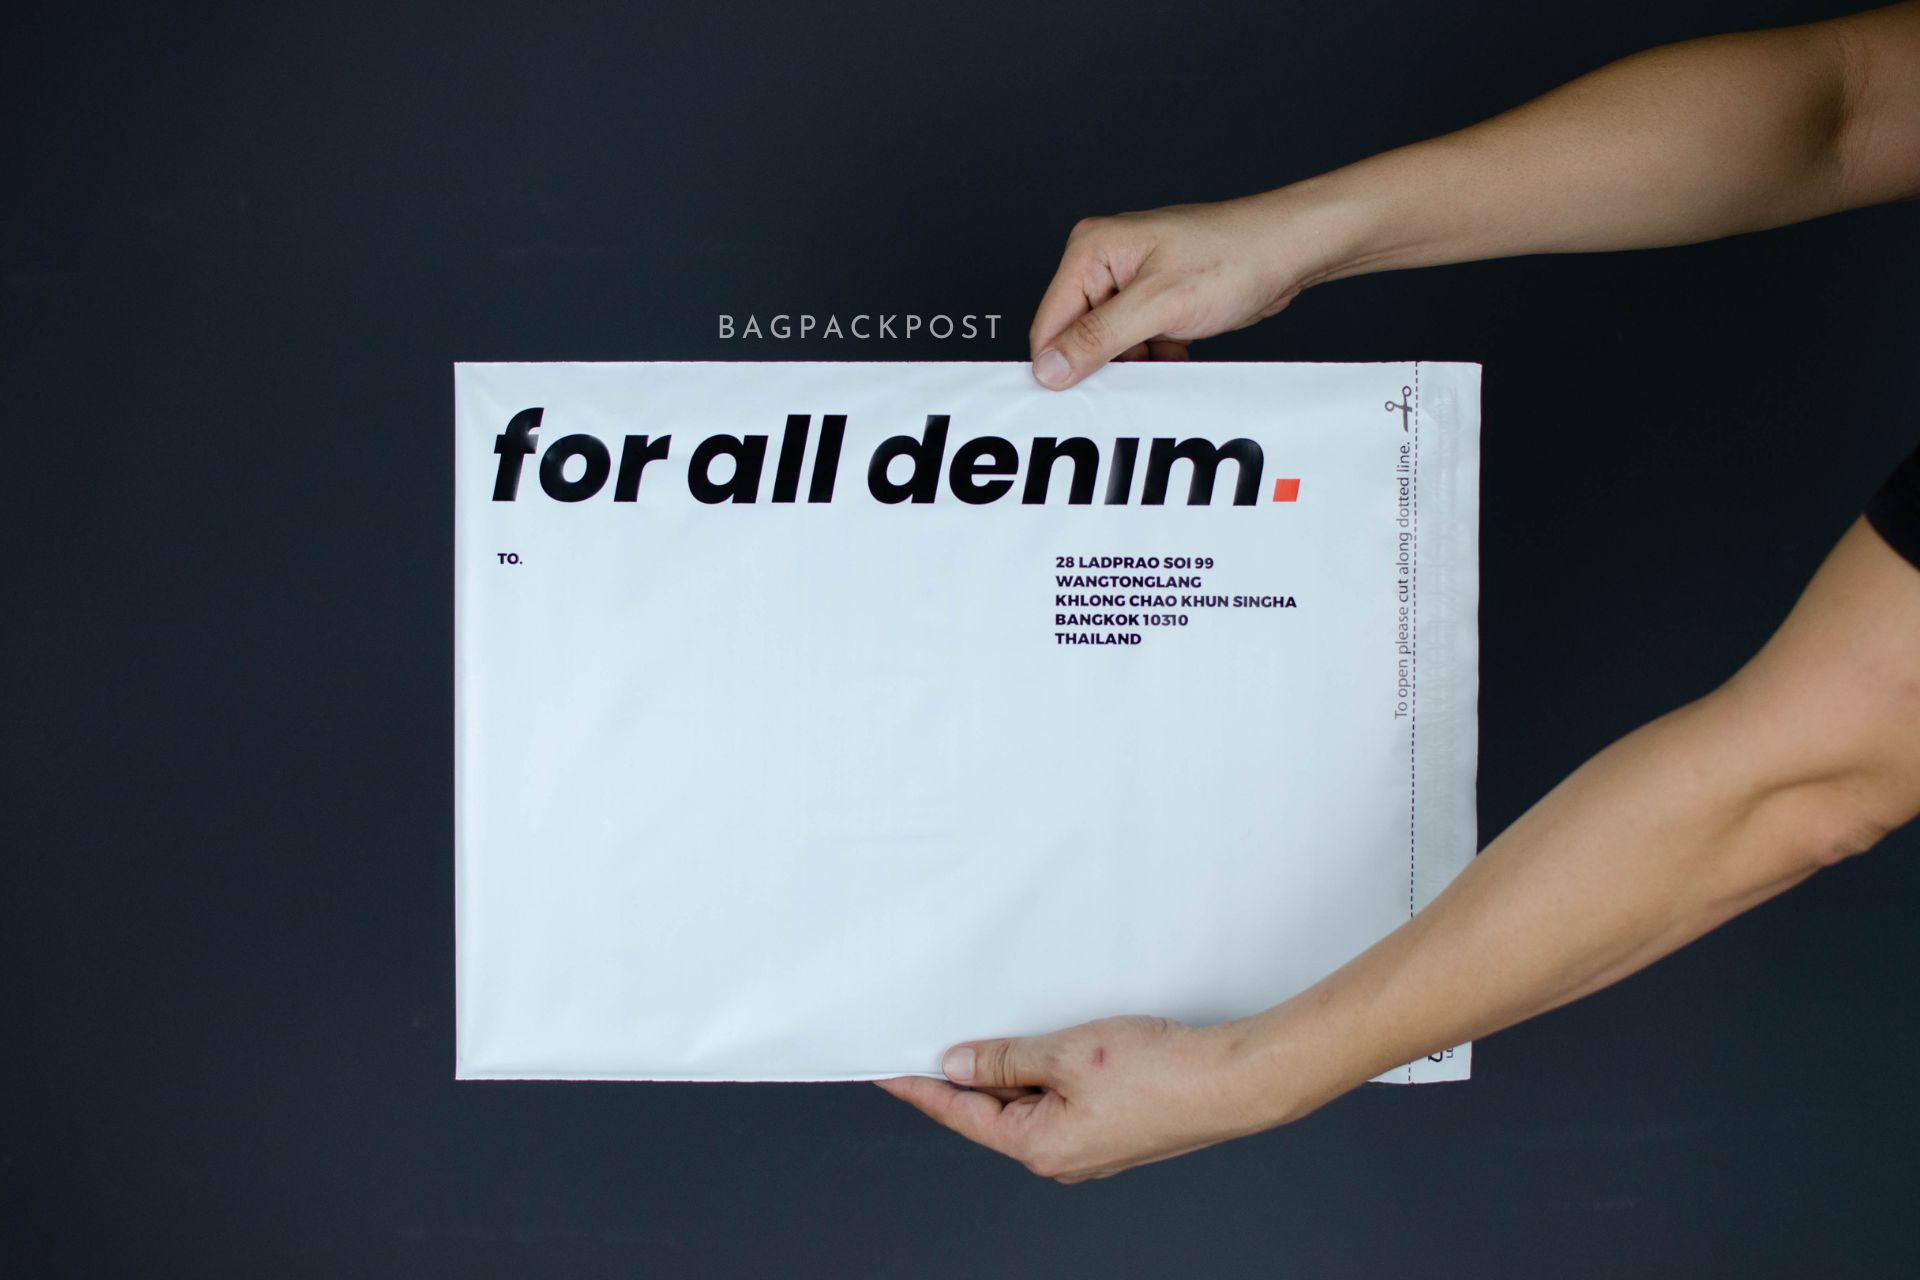 ผลิตถุงไปรษณีย์ ถุงพัสดุ ซองไปรษณีย์พิมพ์ลาย For All Denim ซองไปรษณีย์สีขาว ถุงไปรษณีย์พิมพ์ลาย 1 BagPackPost